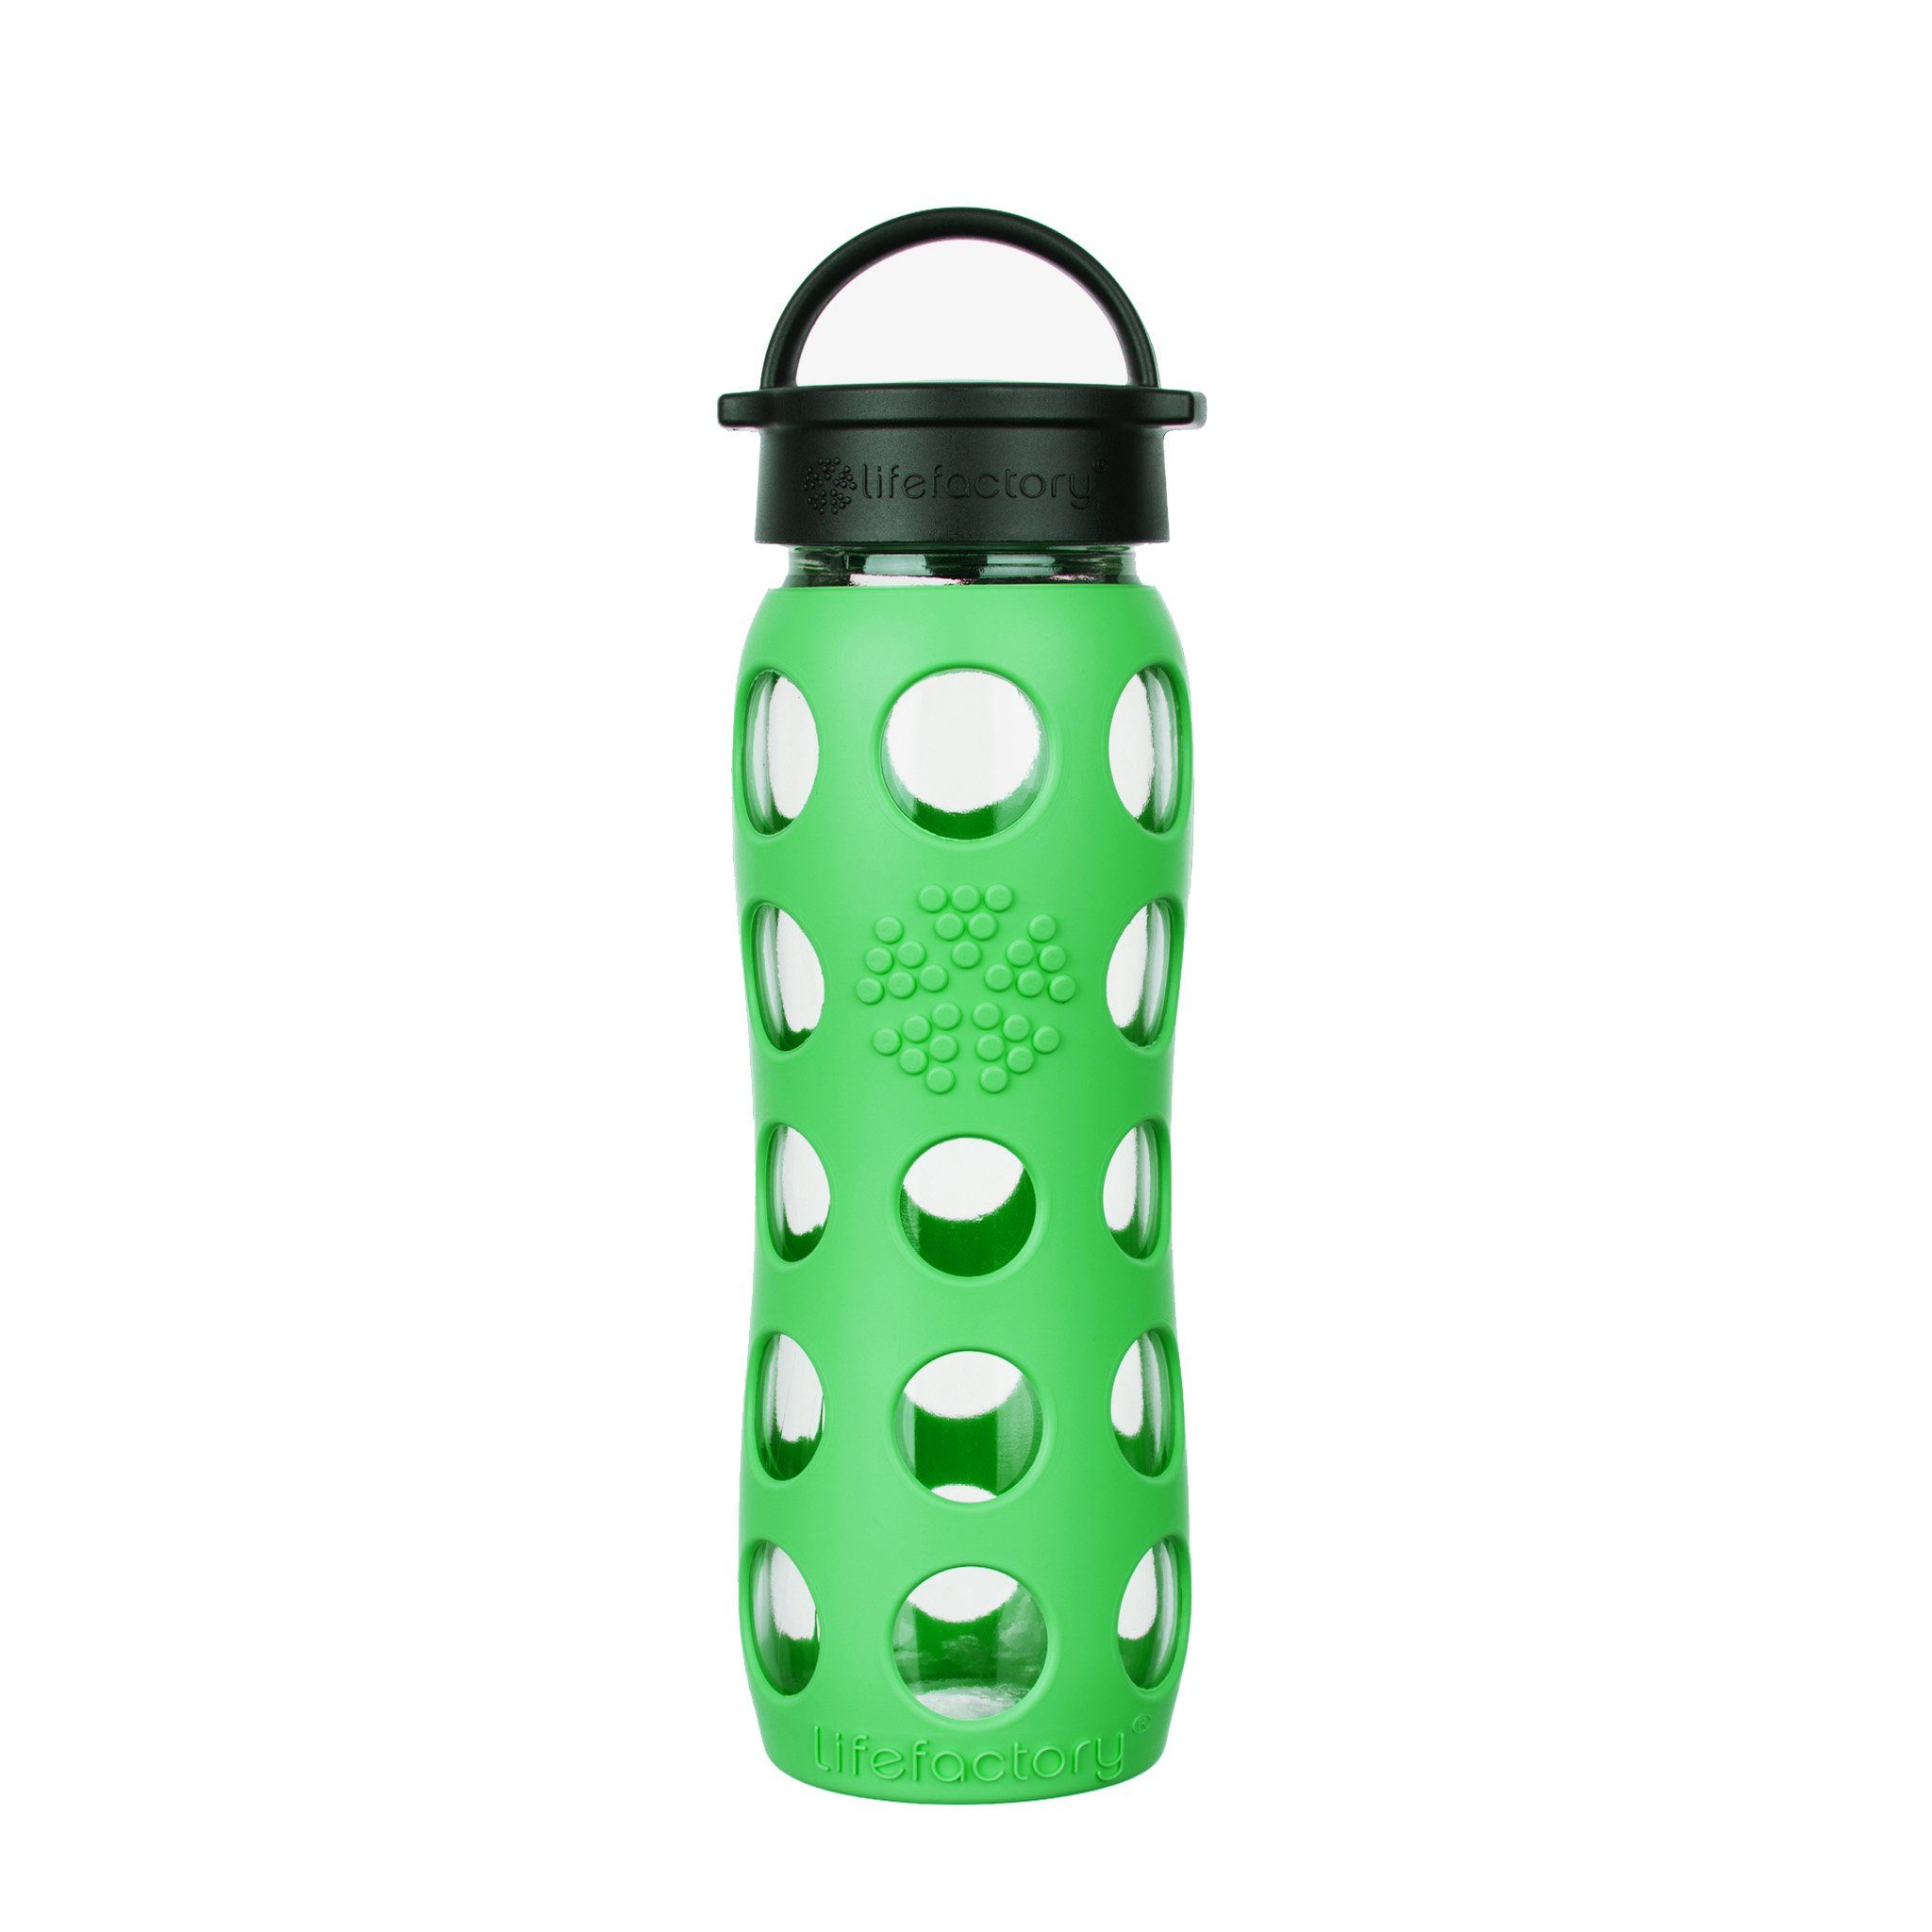 Lifefactory Babyflasche, Lifefactory Glas Flasche mit Silikonhülle und Schraubverschluss, 650ml Moss